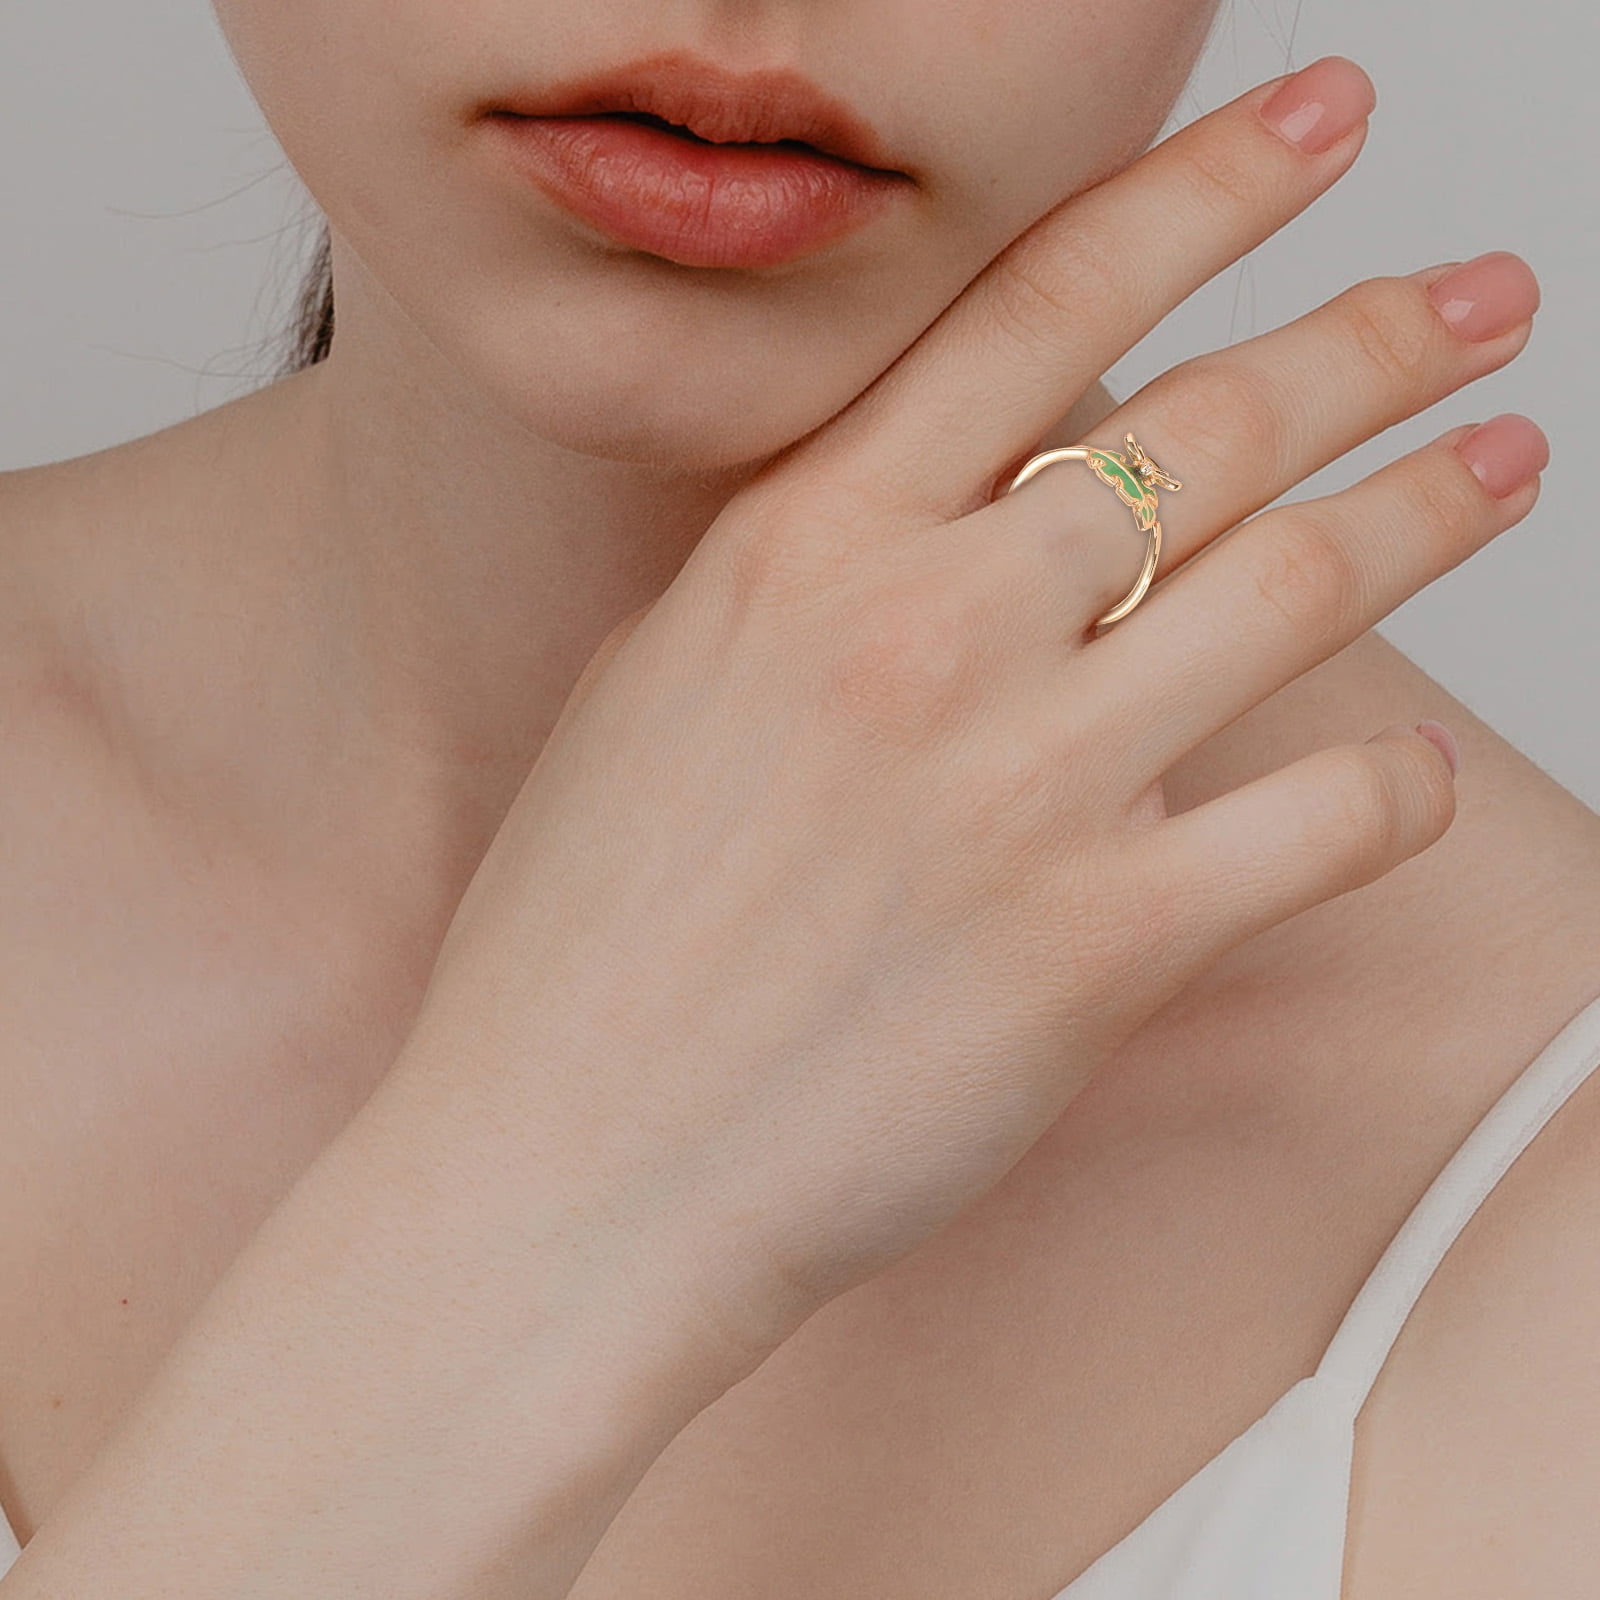 Buy Now Women Finger Rings Set Combo @ Best Price